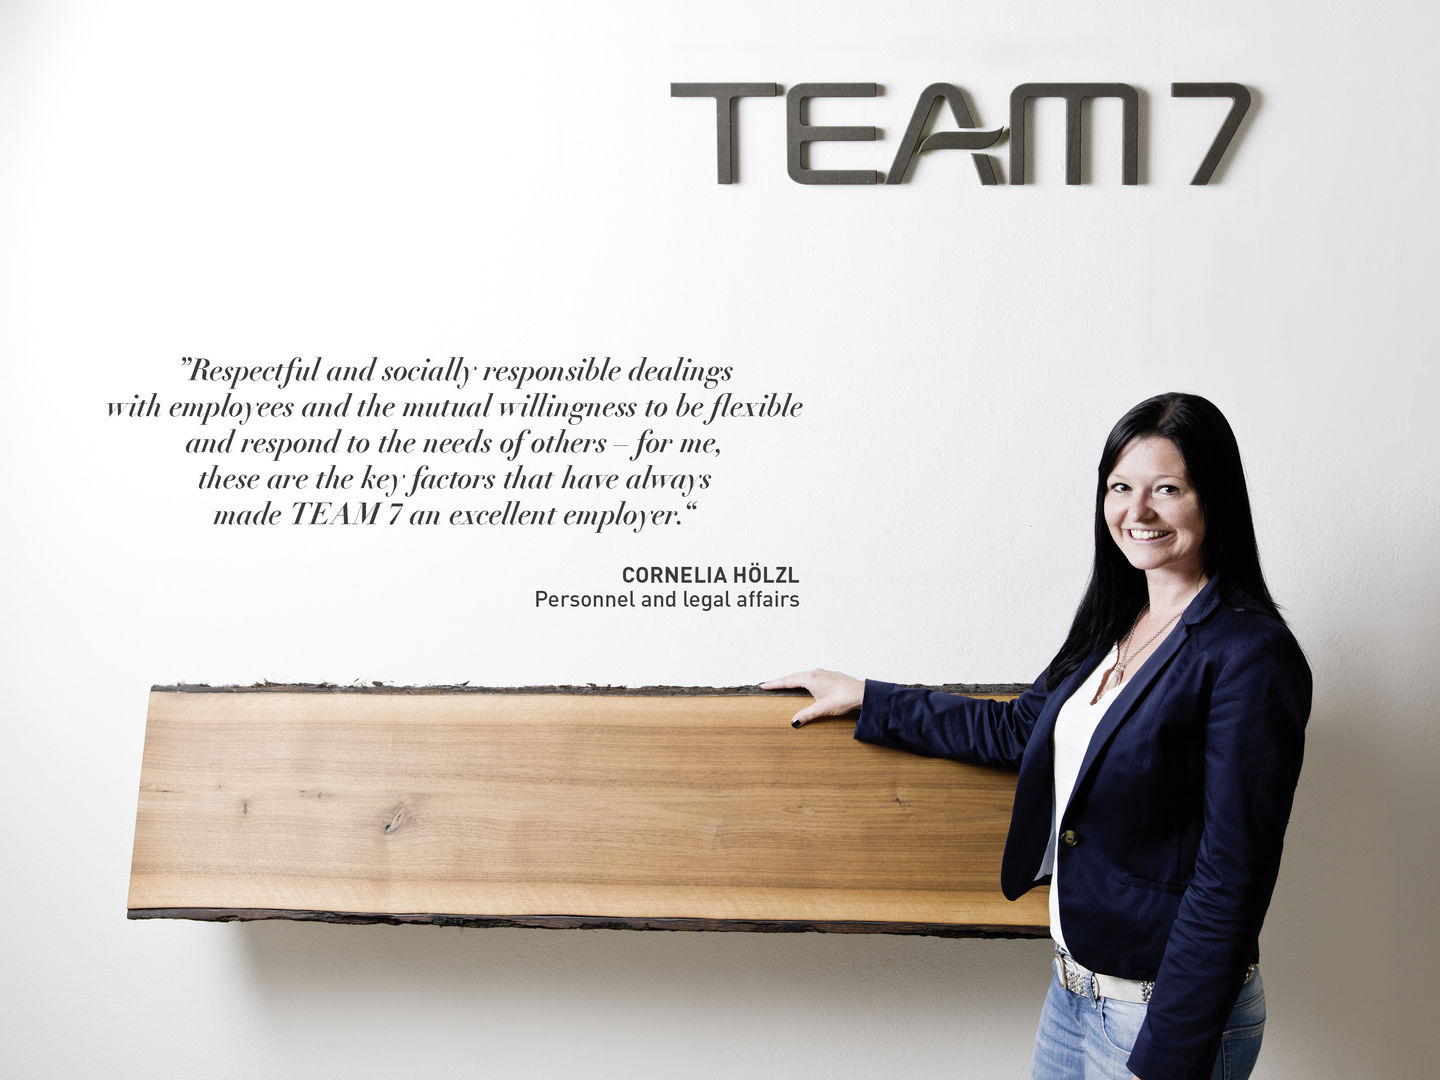 Statement by Cornelia Hölzl about working at TEAM 7